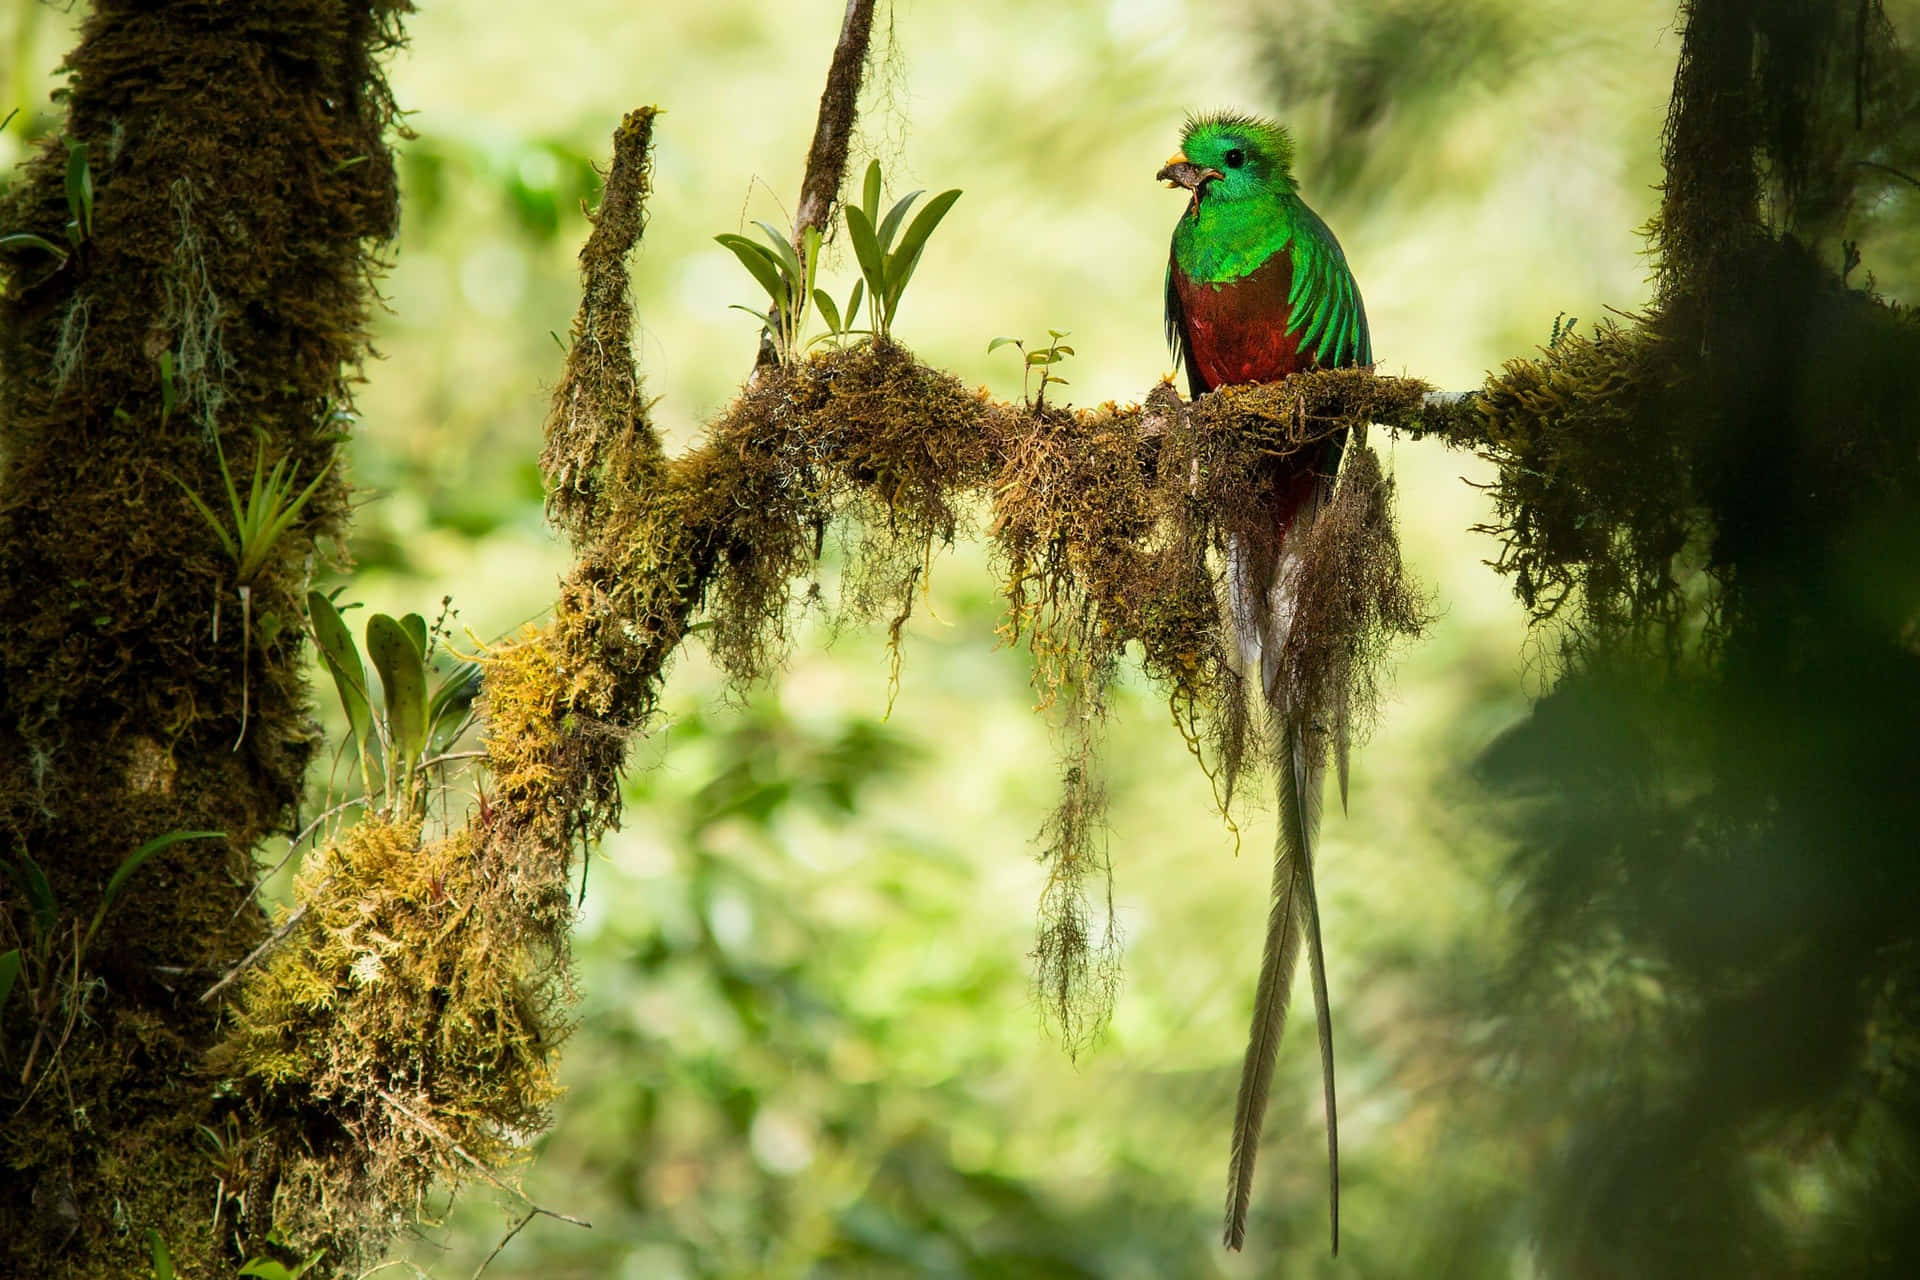 Resplendent Quetzalin Natural Habitat Wallpaper